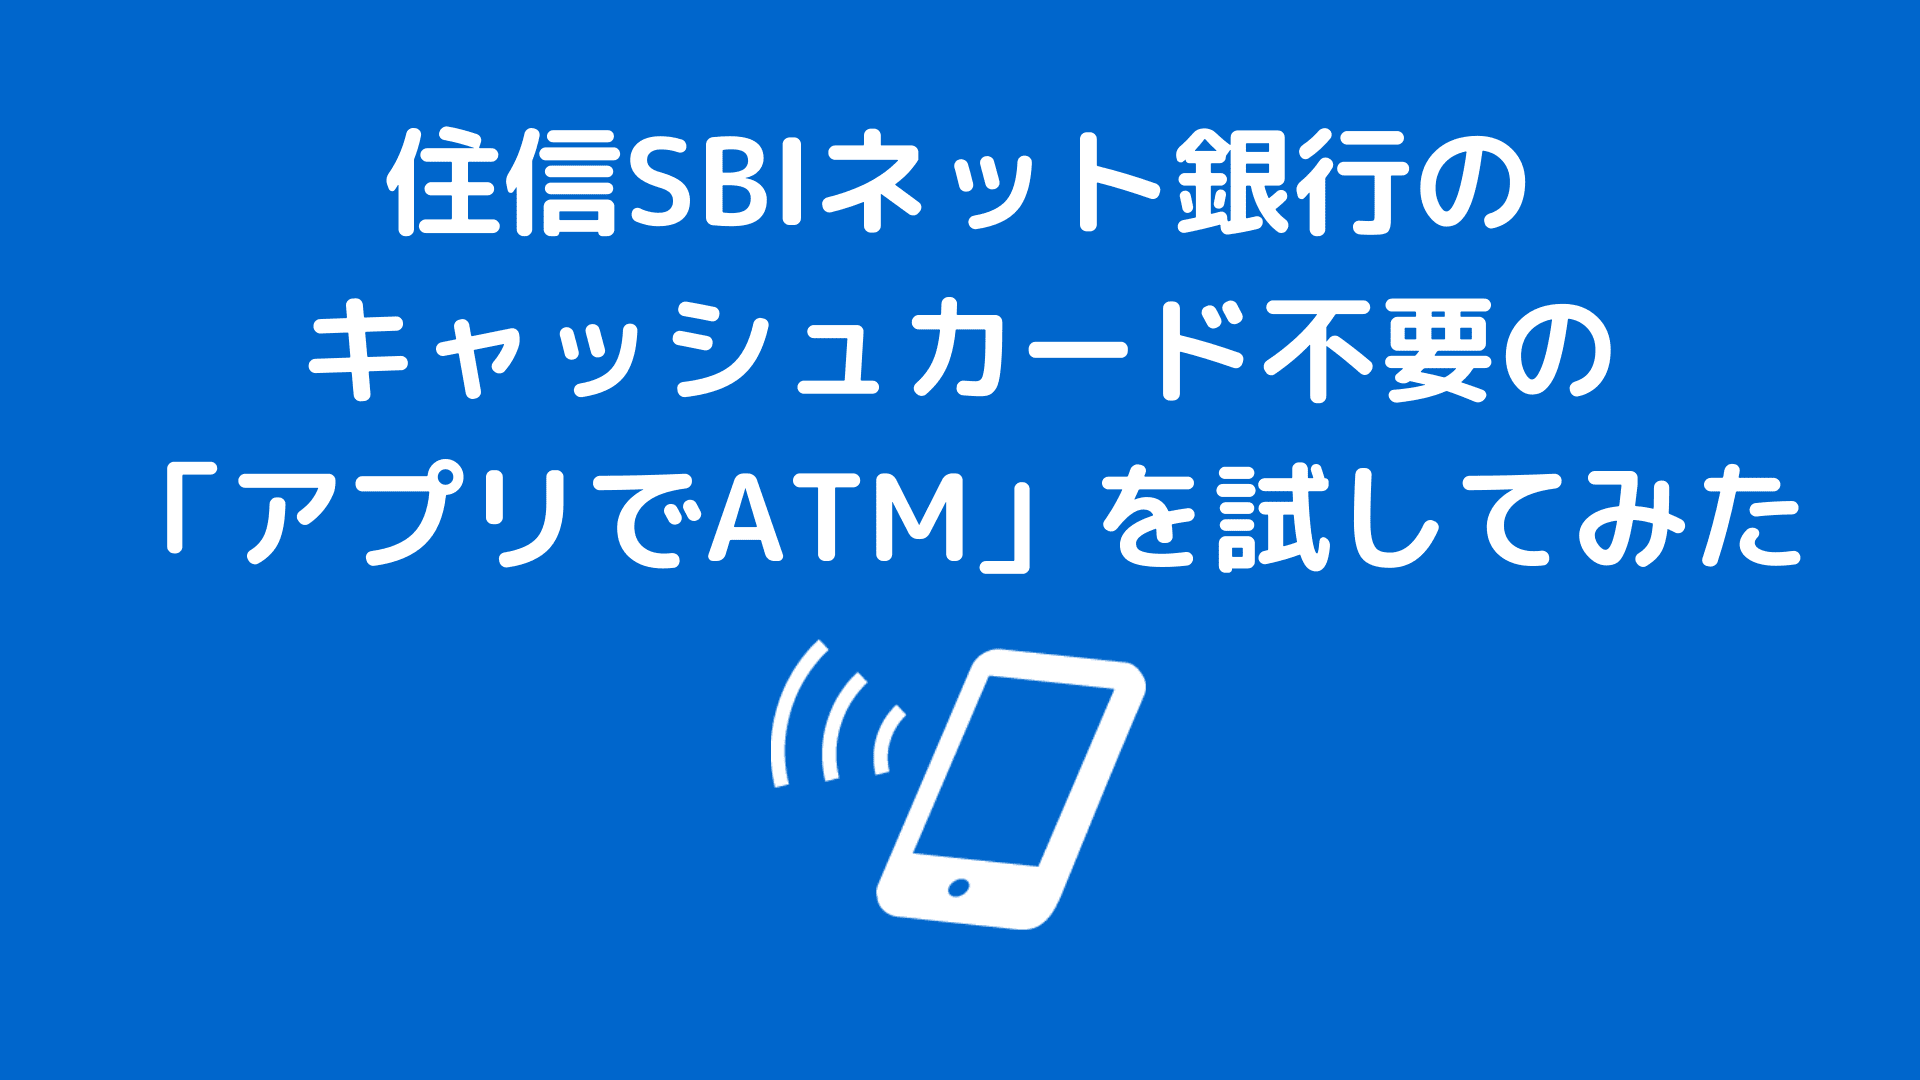 住信sbiネット銀行のキャッシュカード不要でatm操作ができる アプリでatm を試してみた こつこつとスマートに暮らそう